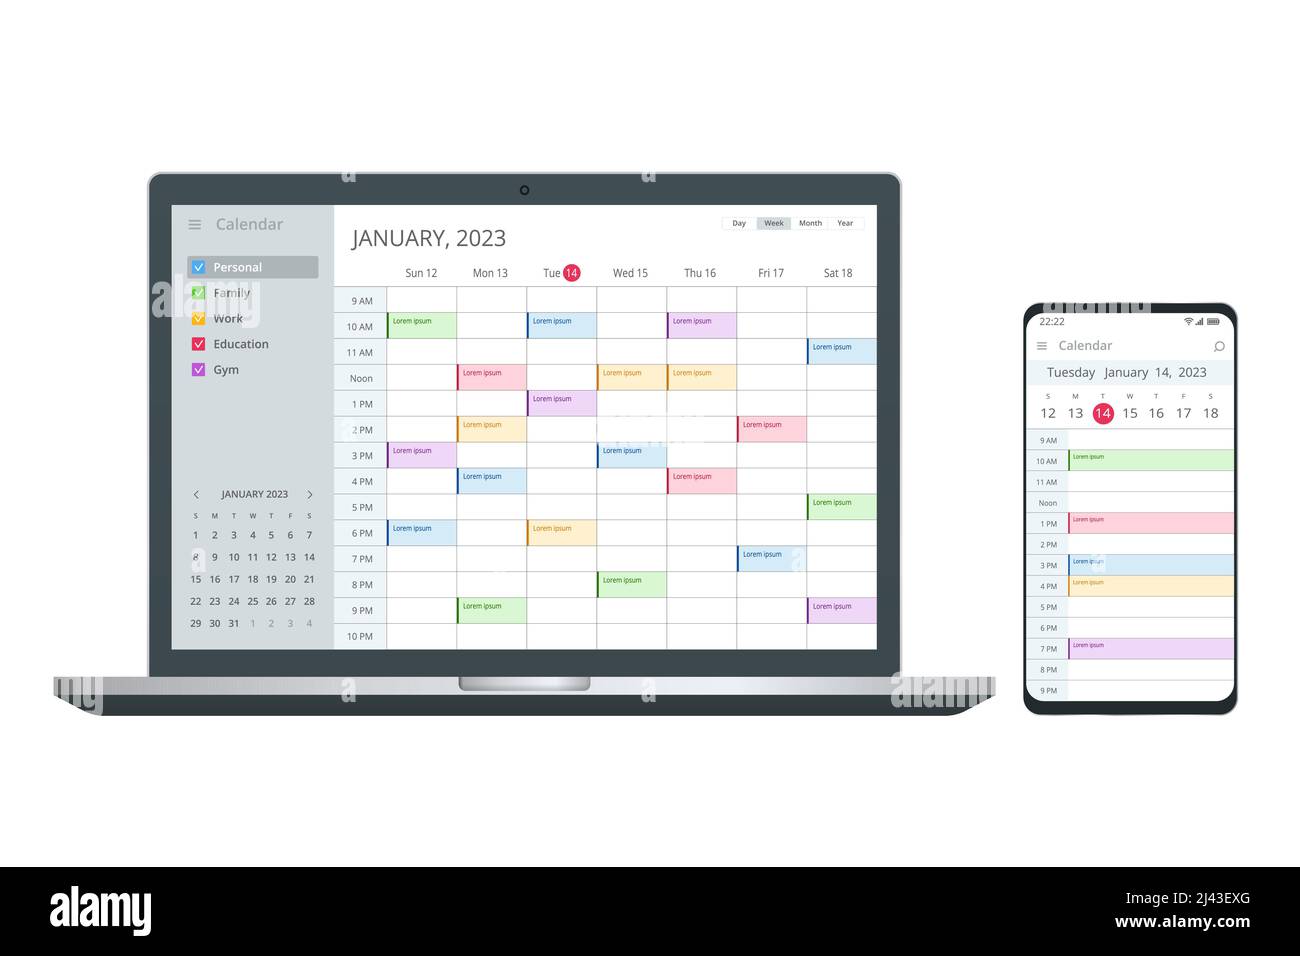 Calendar Planner Organization Management Digital Electronic Calendar